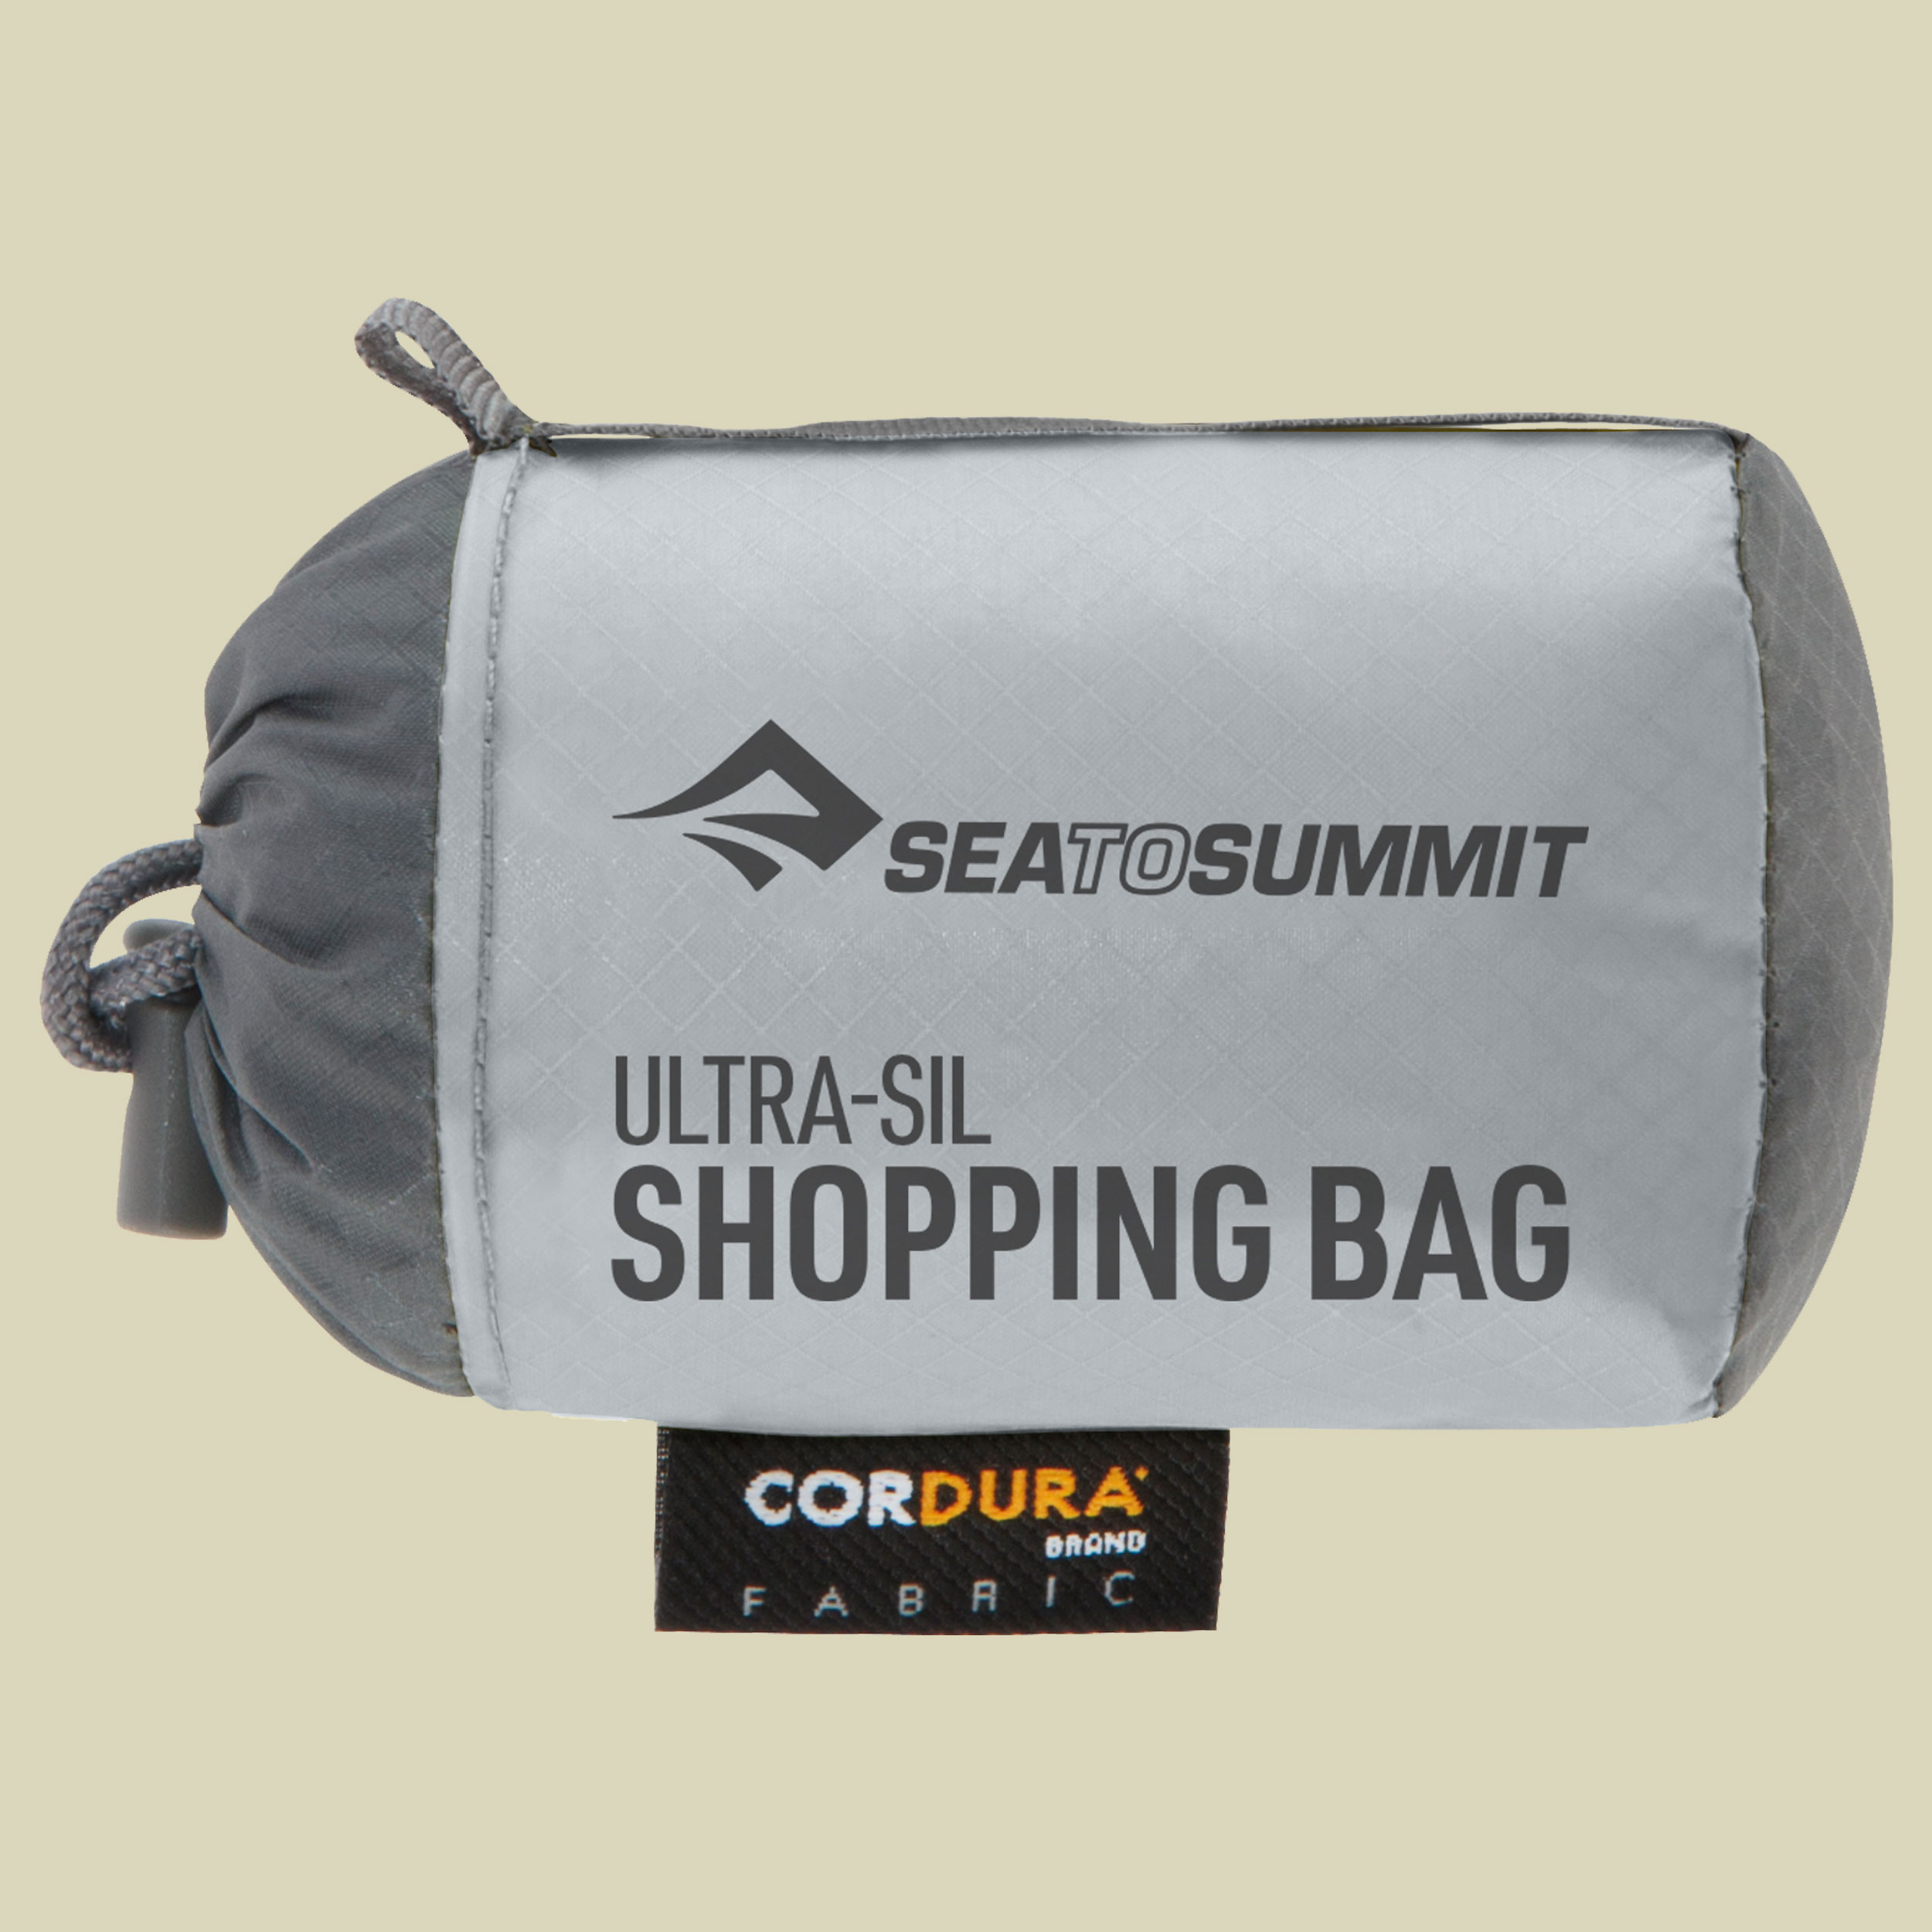 Ultra-Sil Shopping Bag 30L 30l grau - high rise